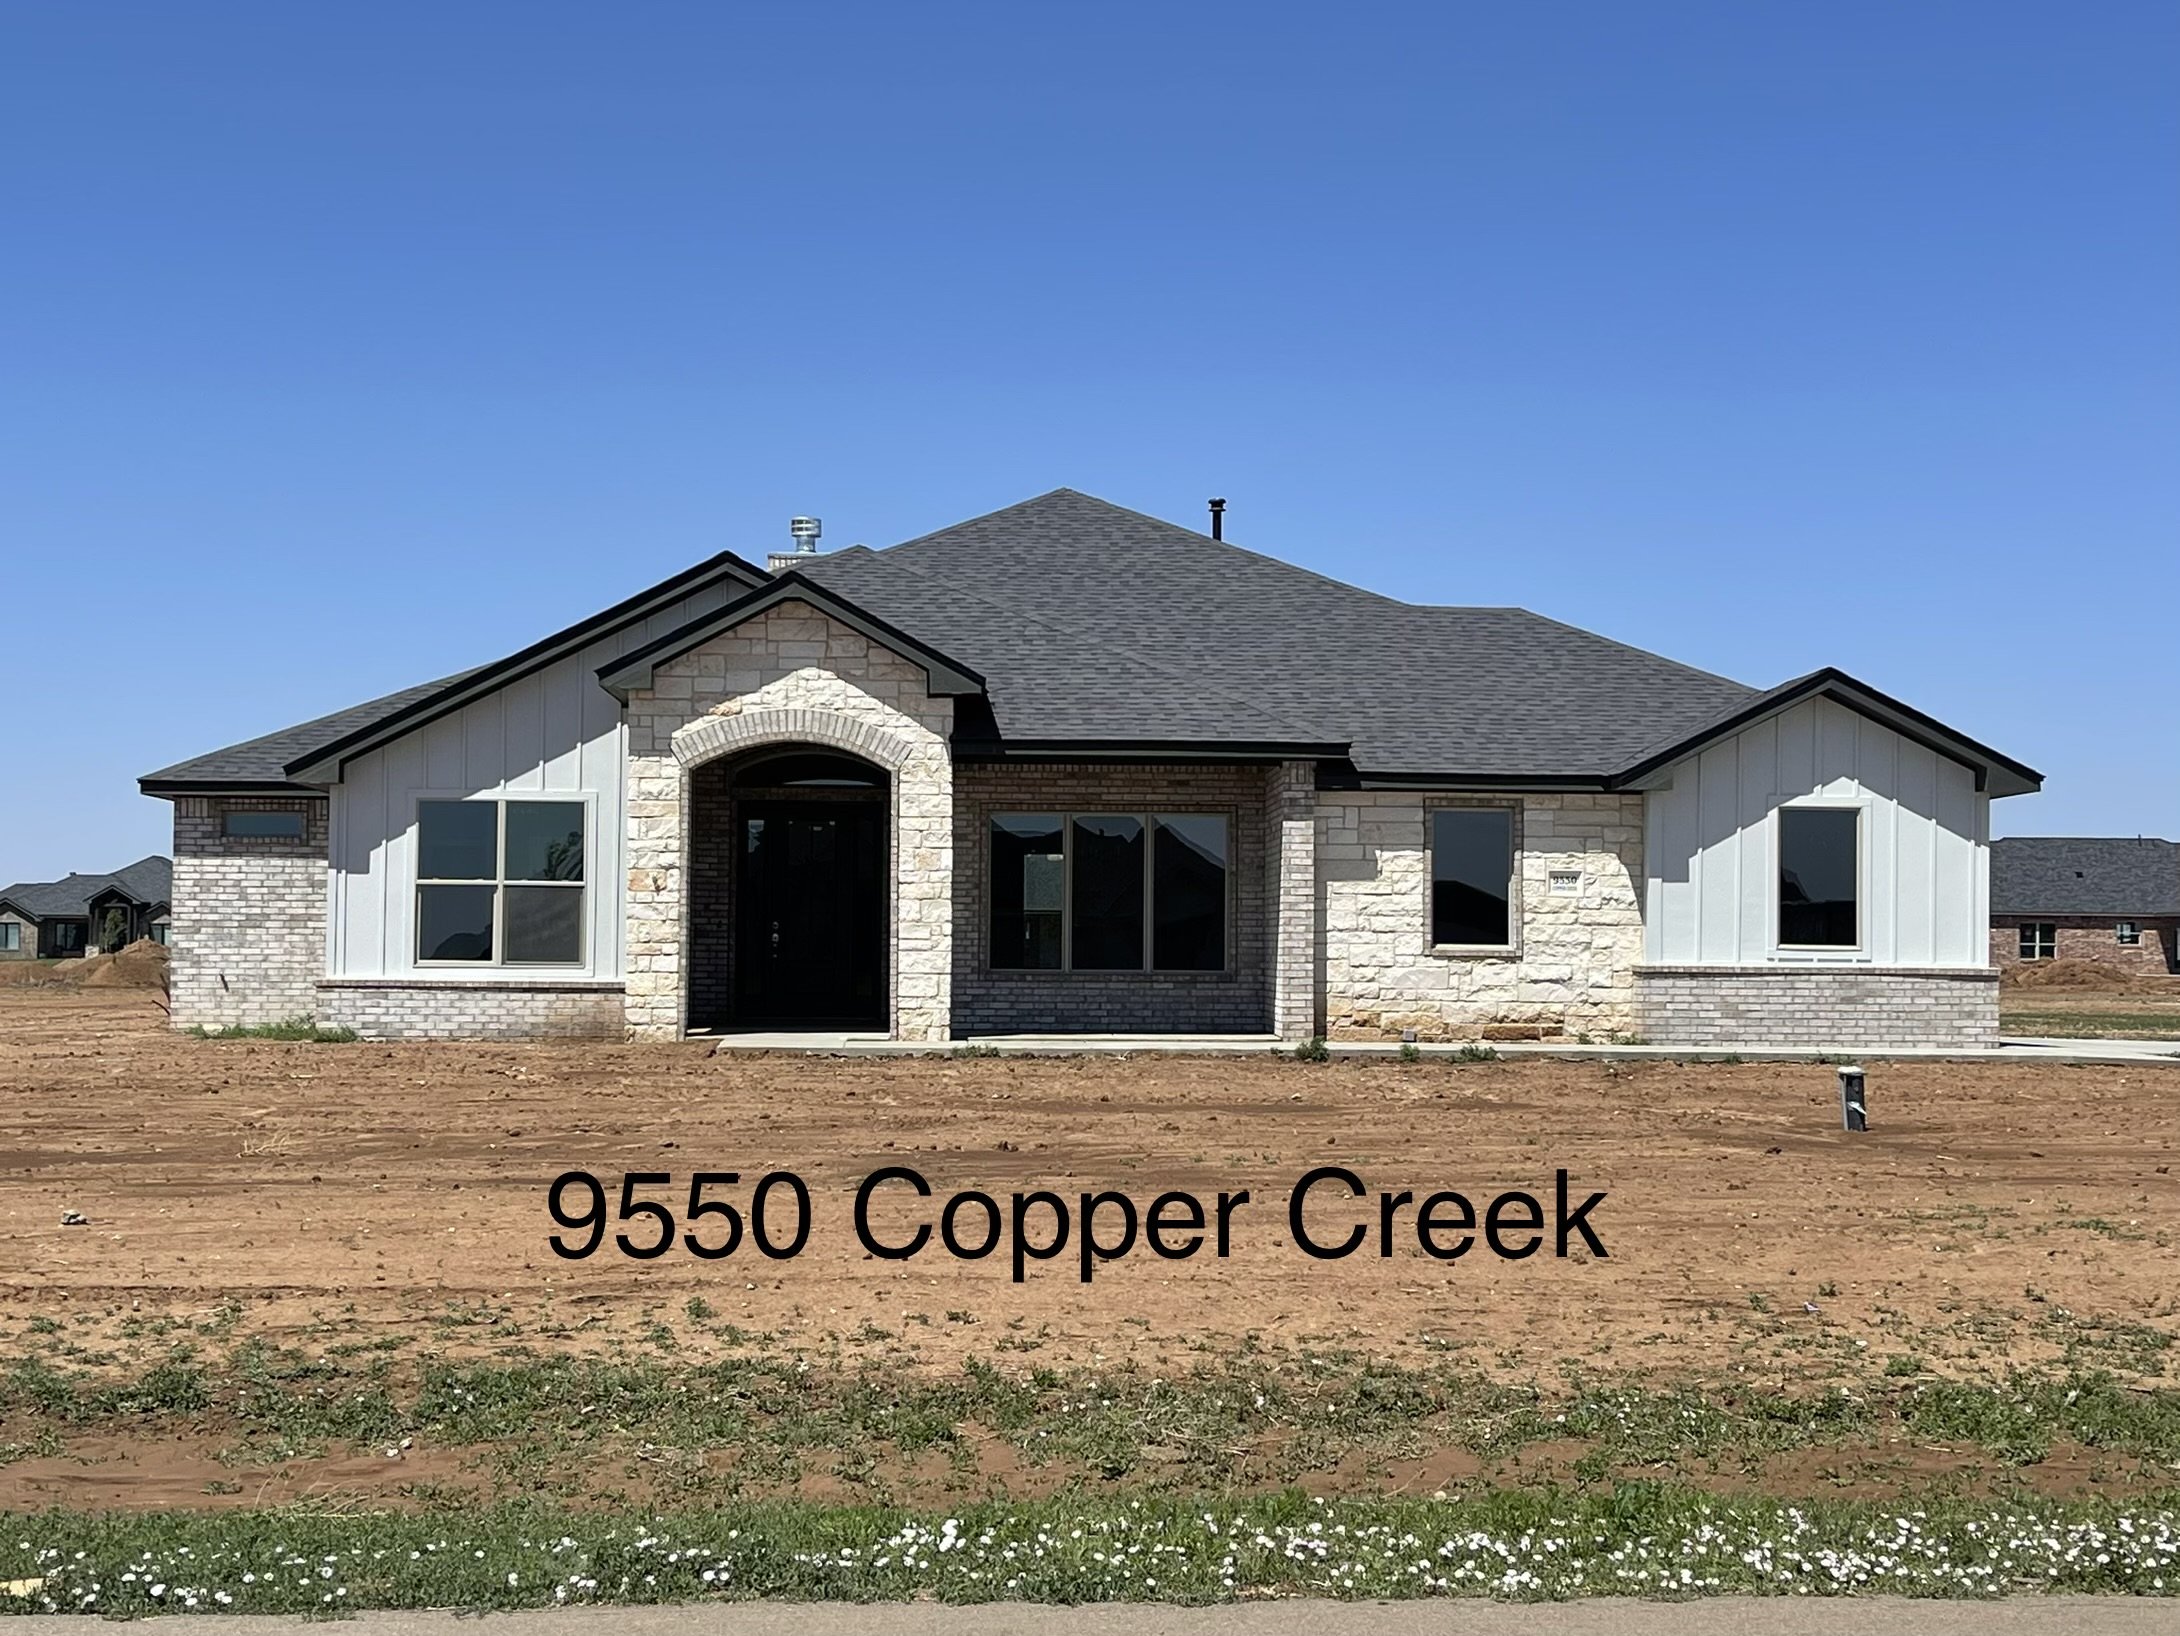 9550 Copper Creek Exterior.jpg